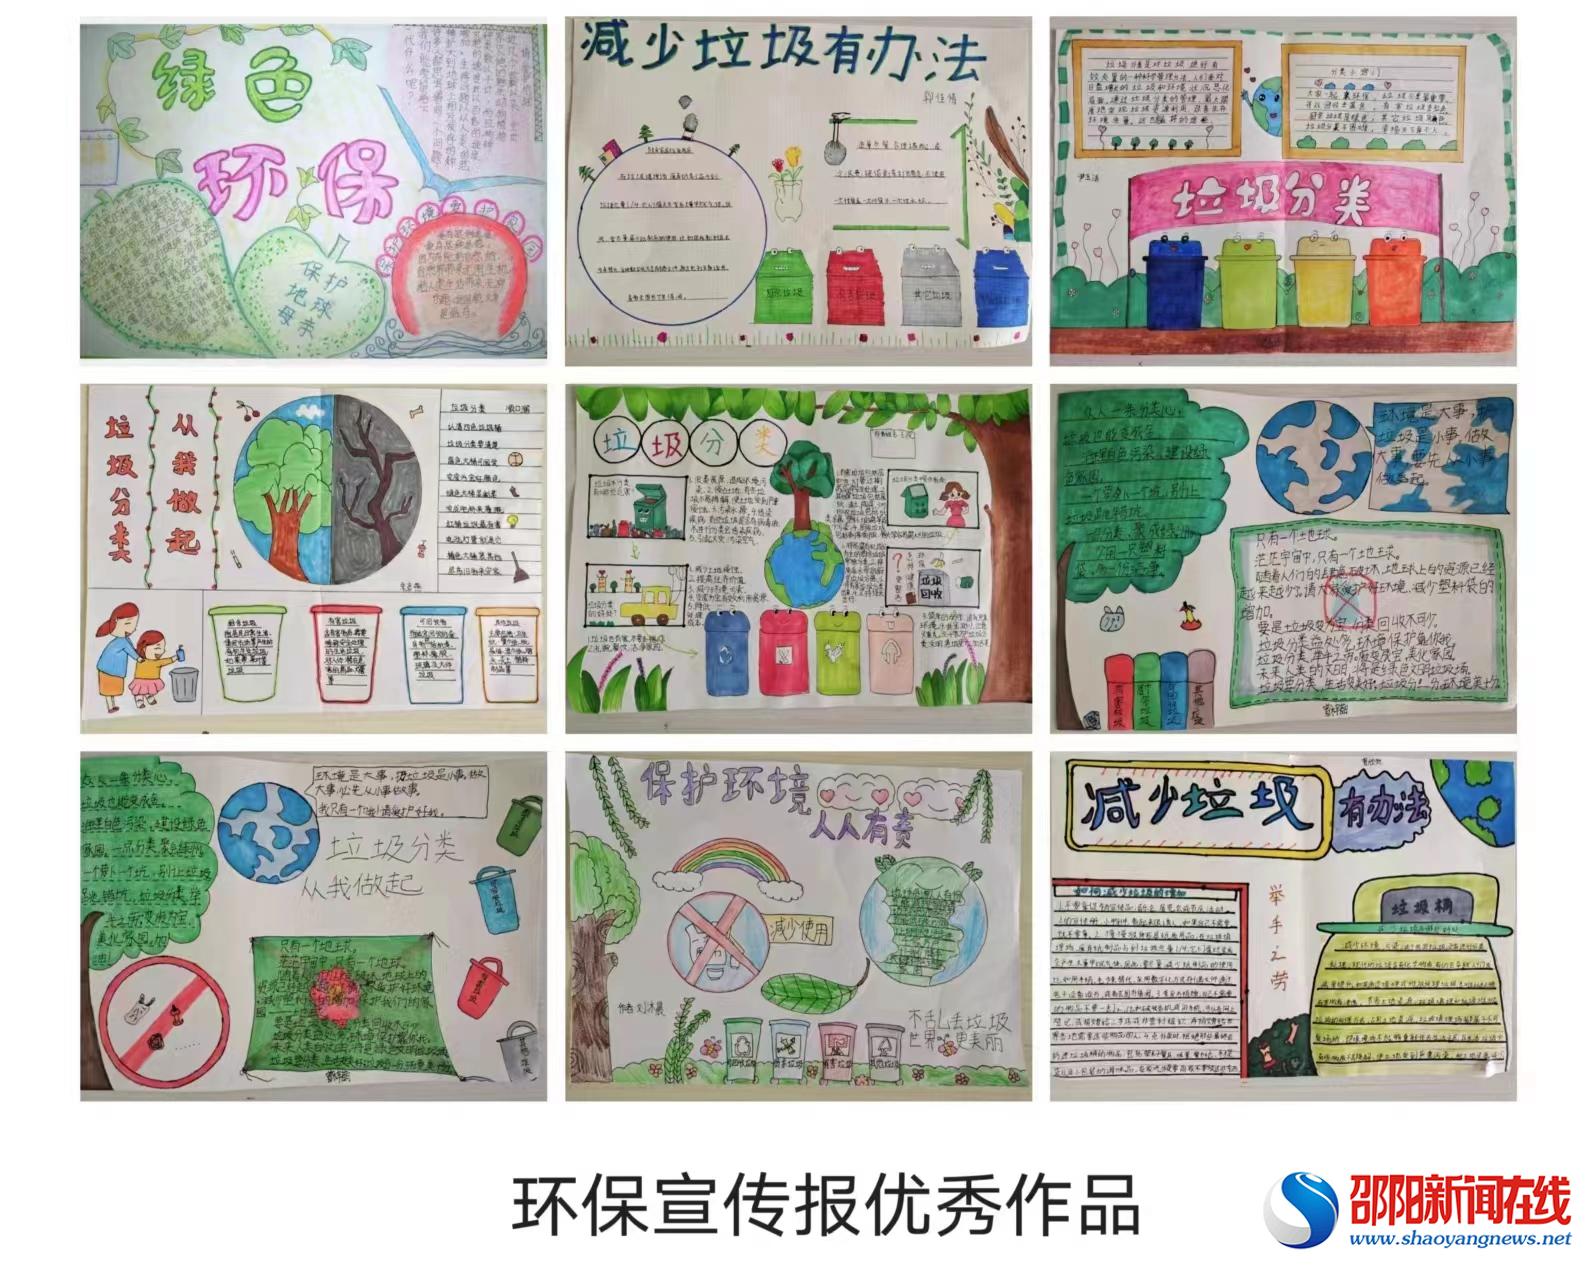 洞口县高沙镇中心小学开展环保宣传报评比活动